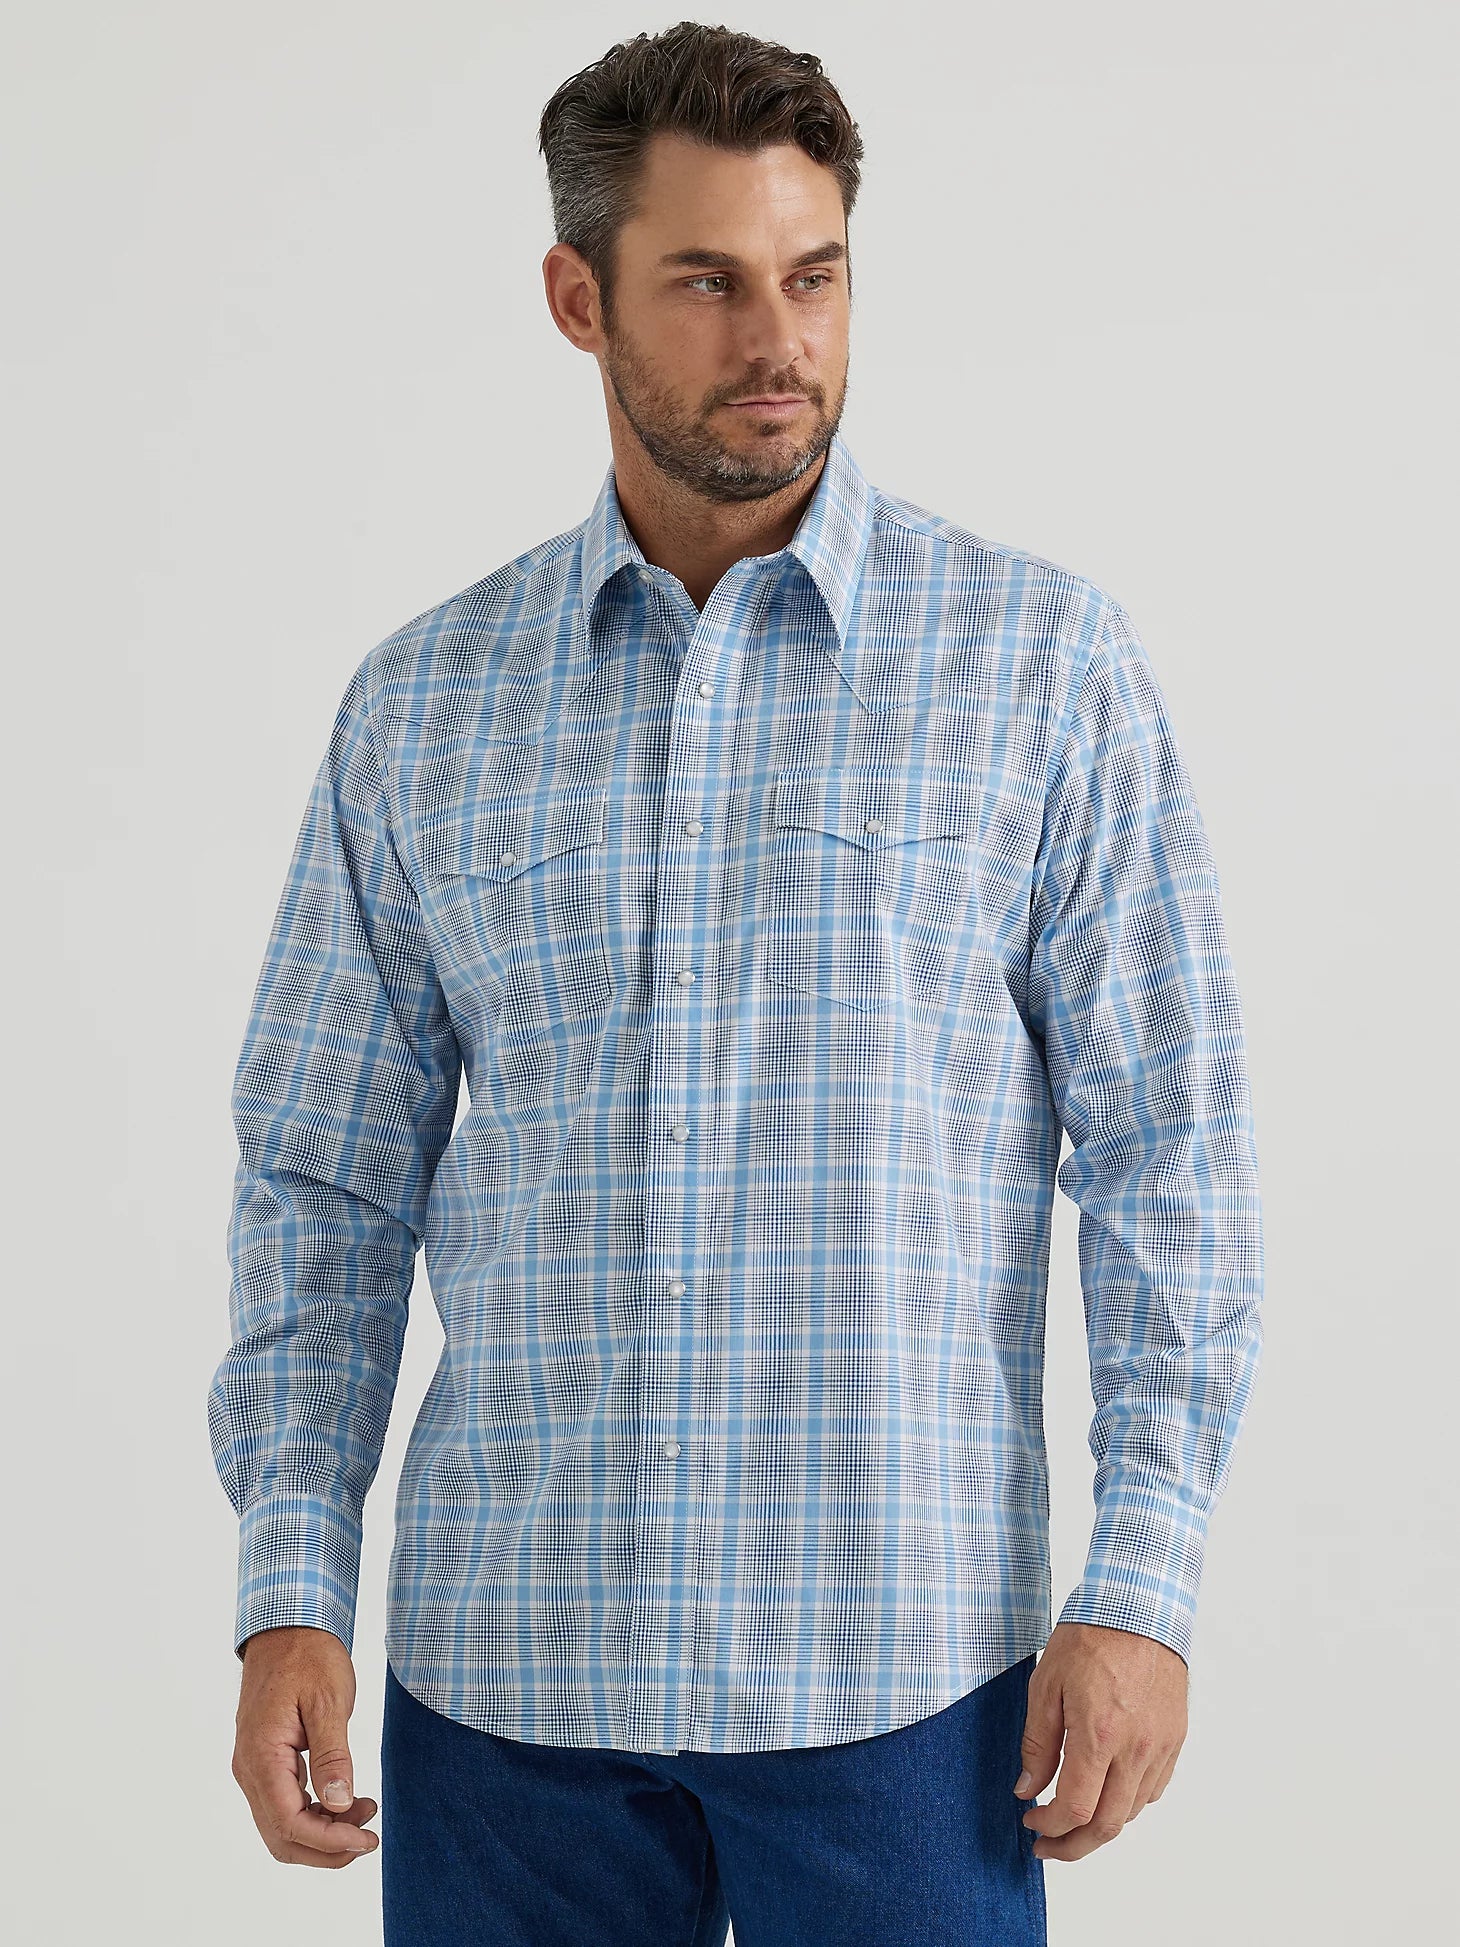 Wrangler Men's Wrinkle Resist Grey Plaid Shirt